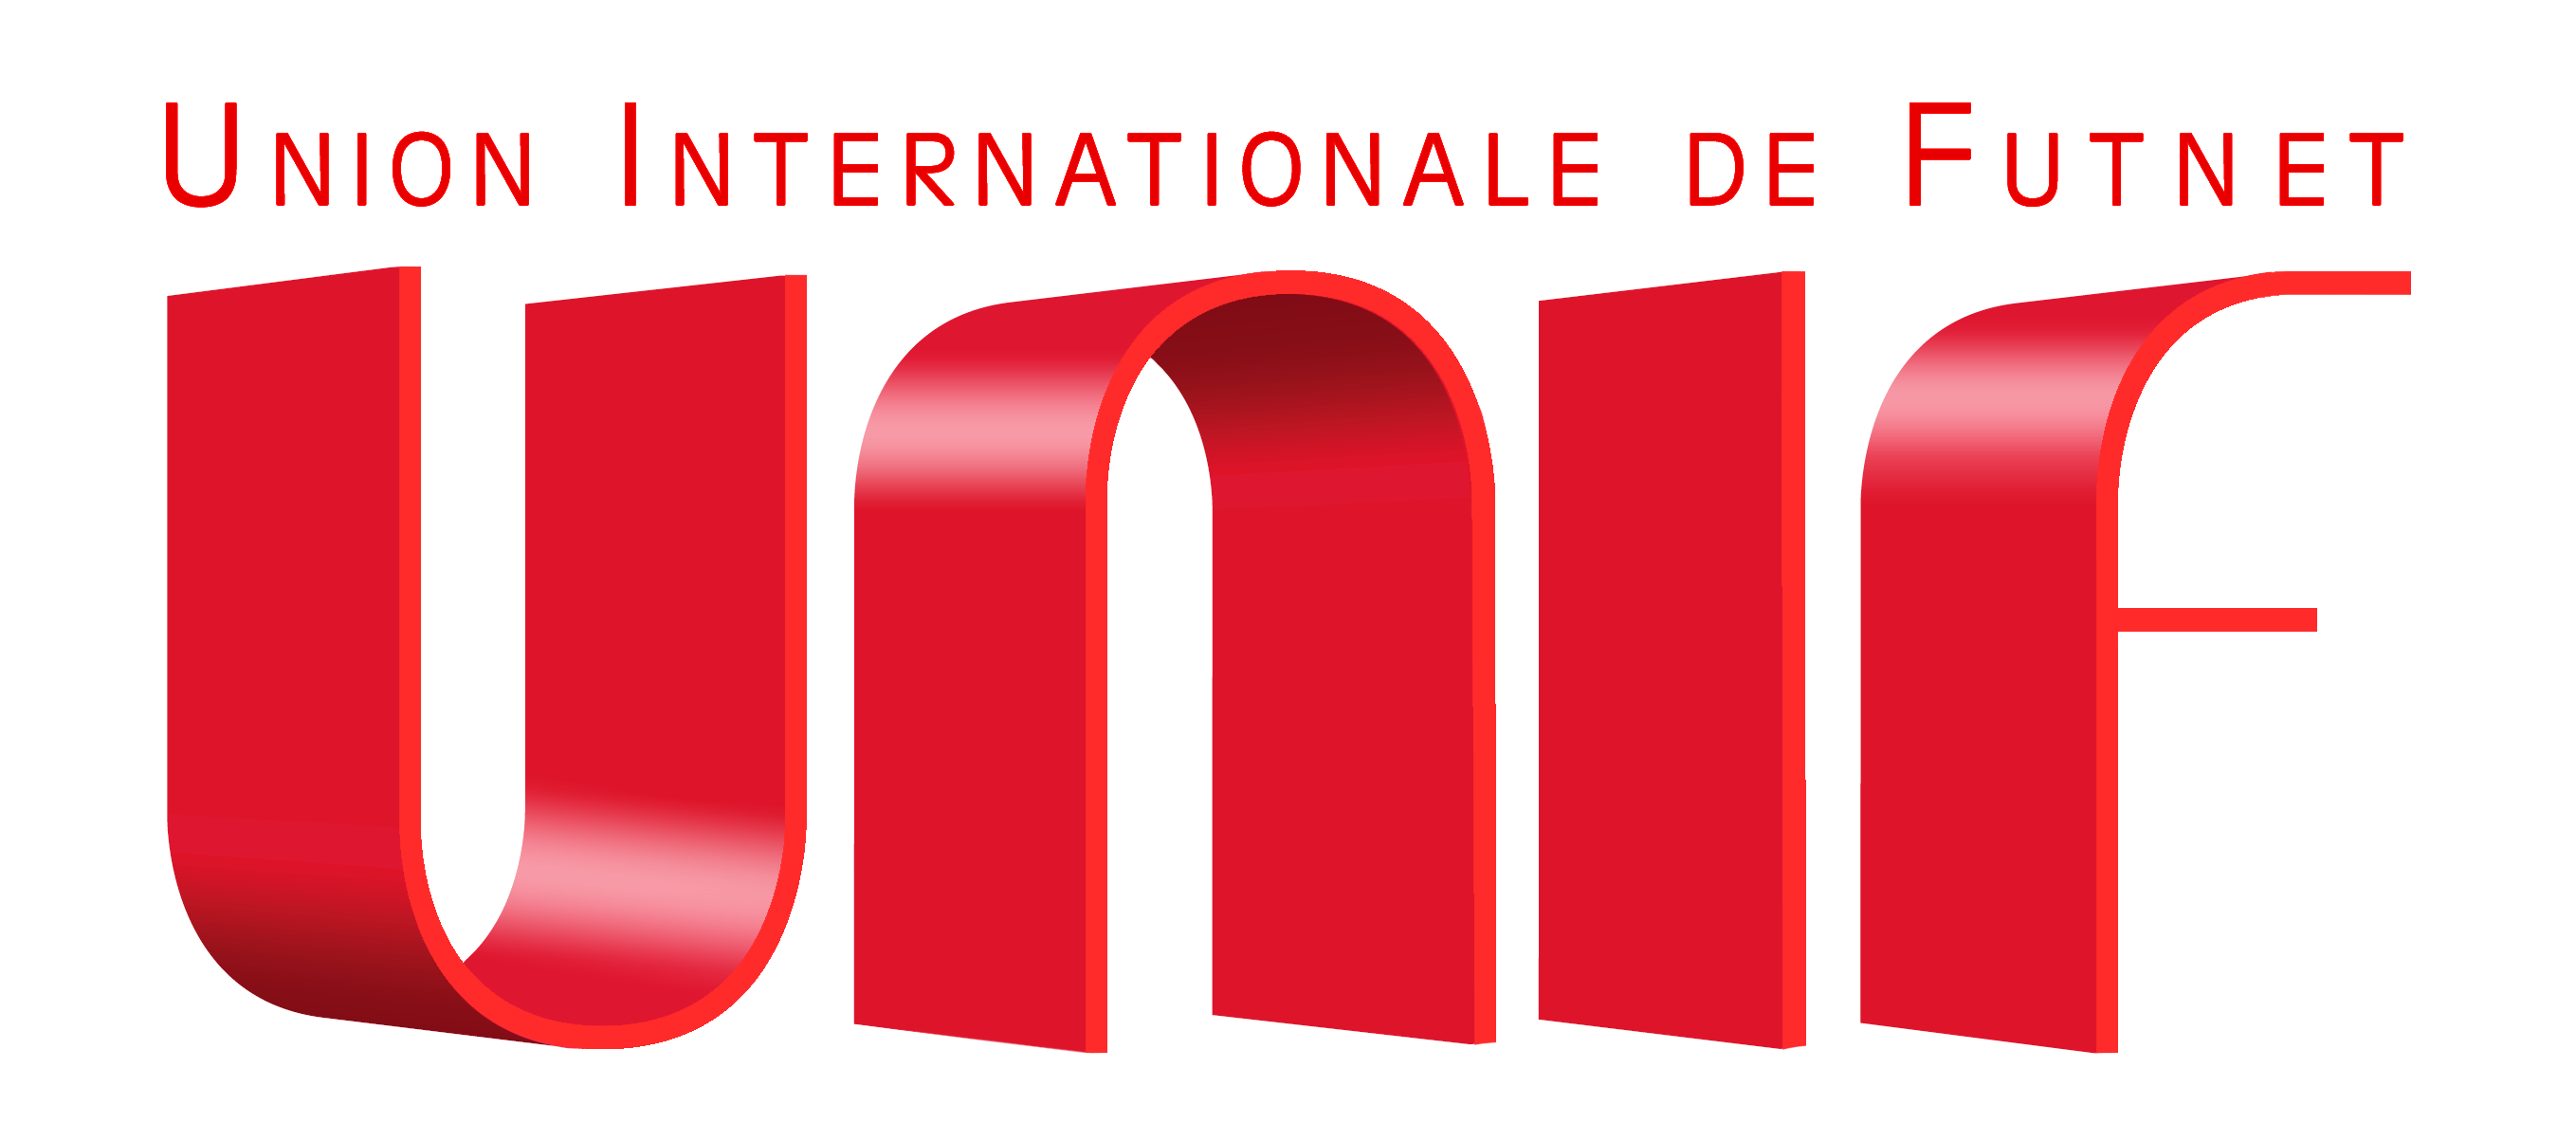 La Union International de Futnet (UNIF), nombra al presidente de AVAFUT, Juanjo Bernal, Miembro del Comité de Promoción y Desarrollo del Futnet.